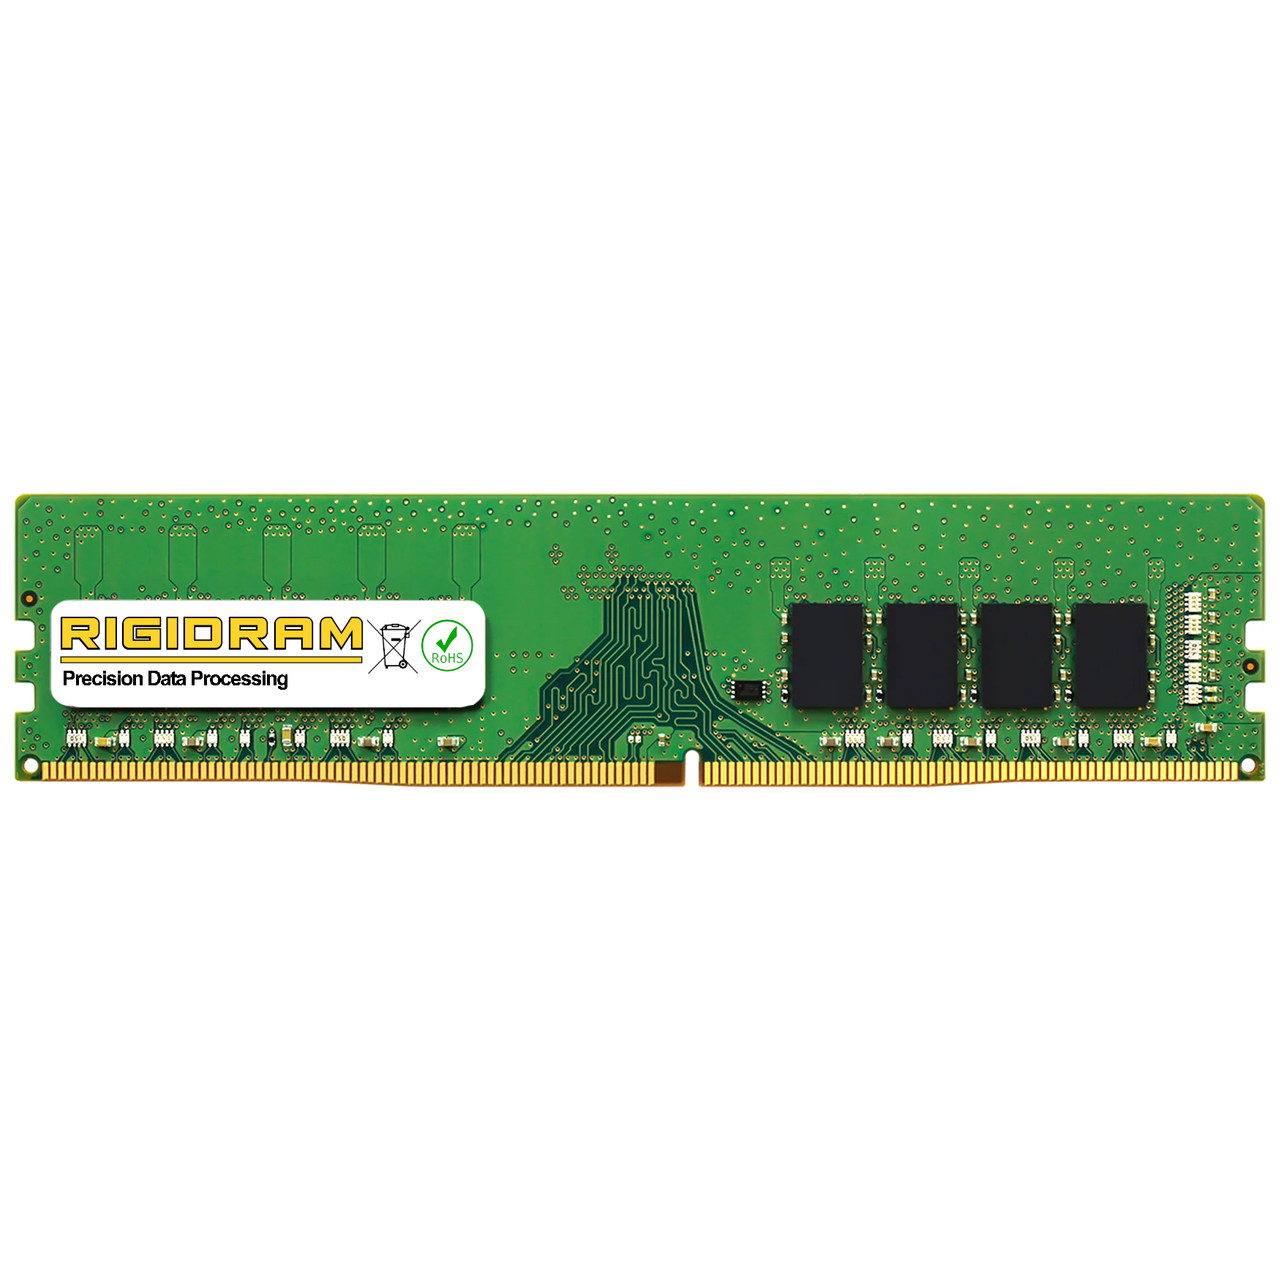 16GB RAM Acer Aspire TC-780-UR18 DDR4 Memory by RigidRAM Upgrades